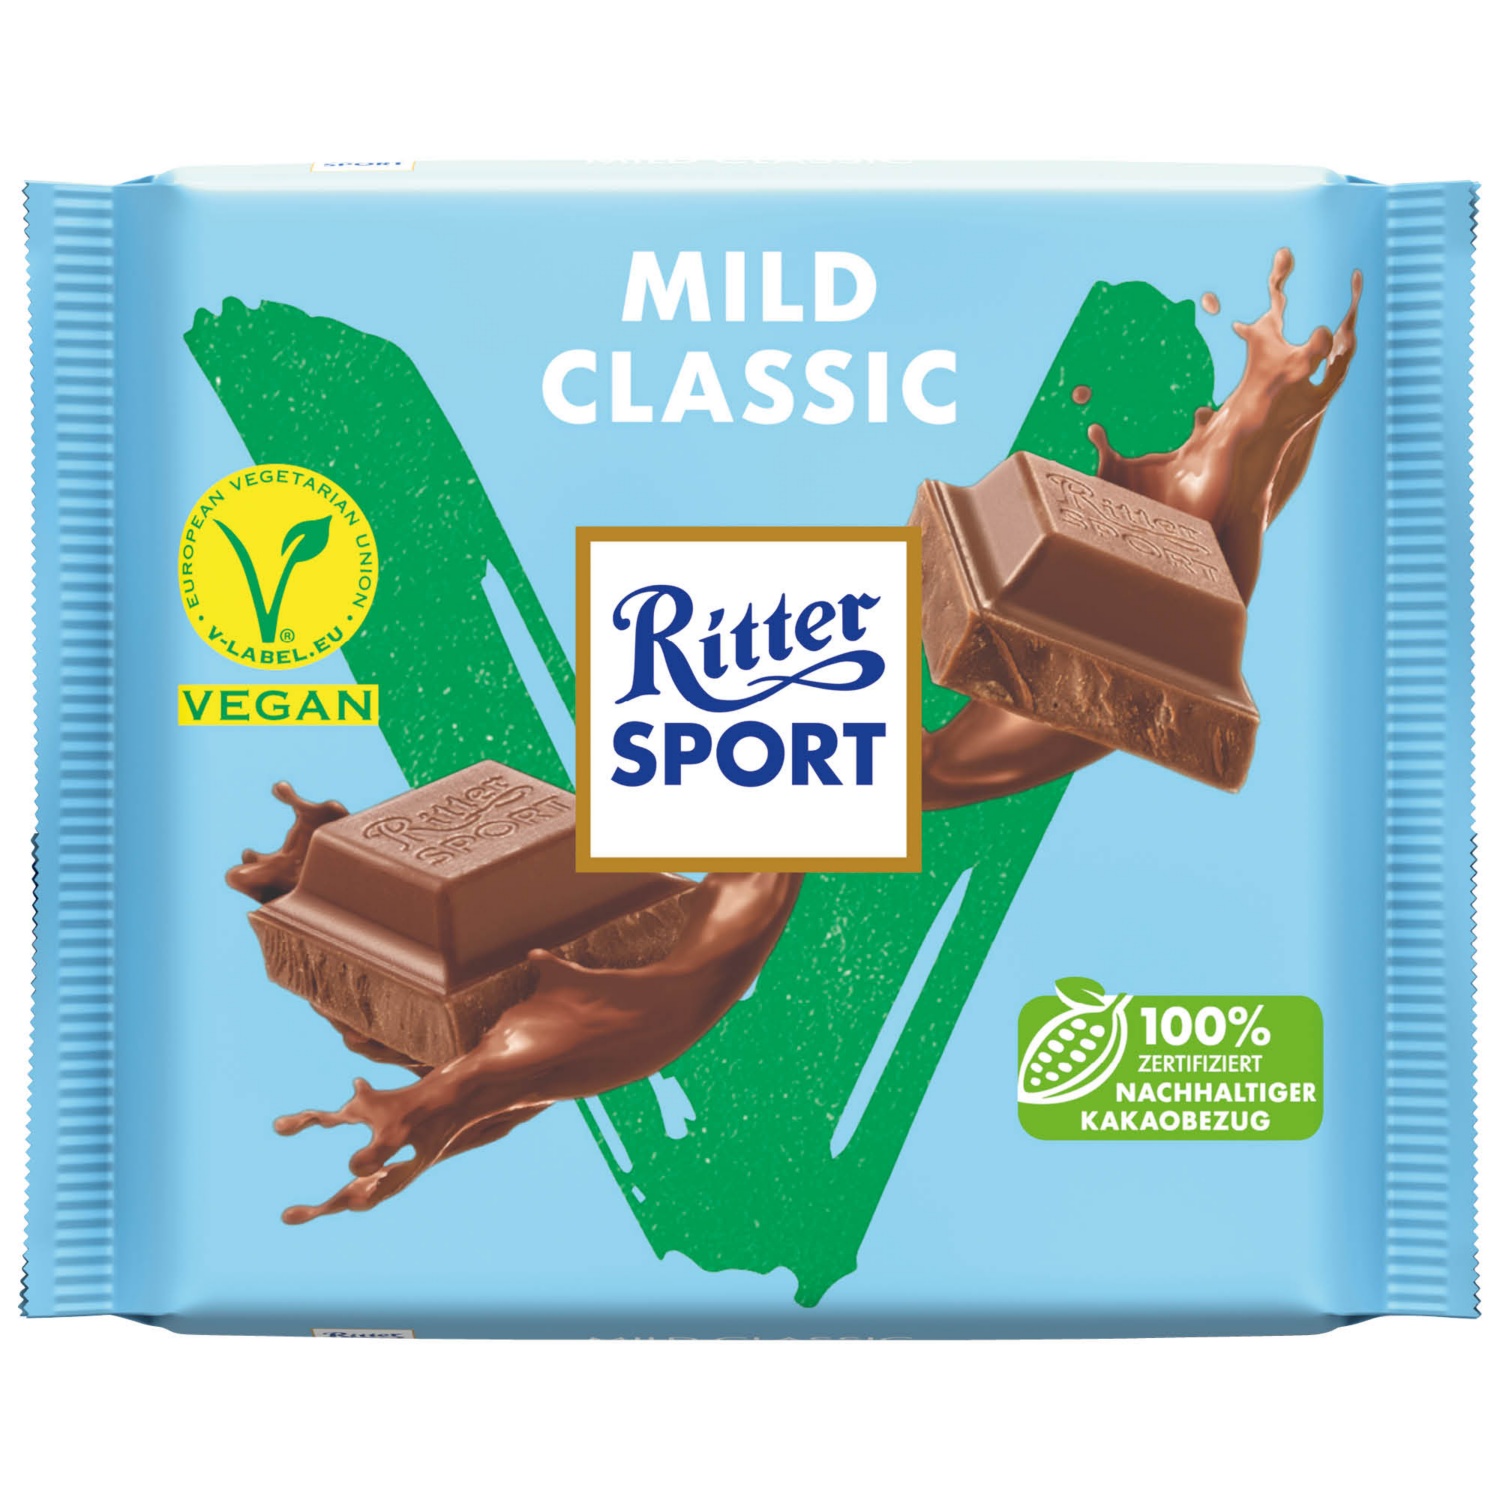 Ritter Sport Vegan, mild Classic